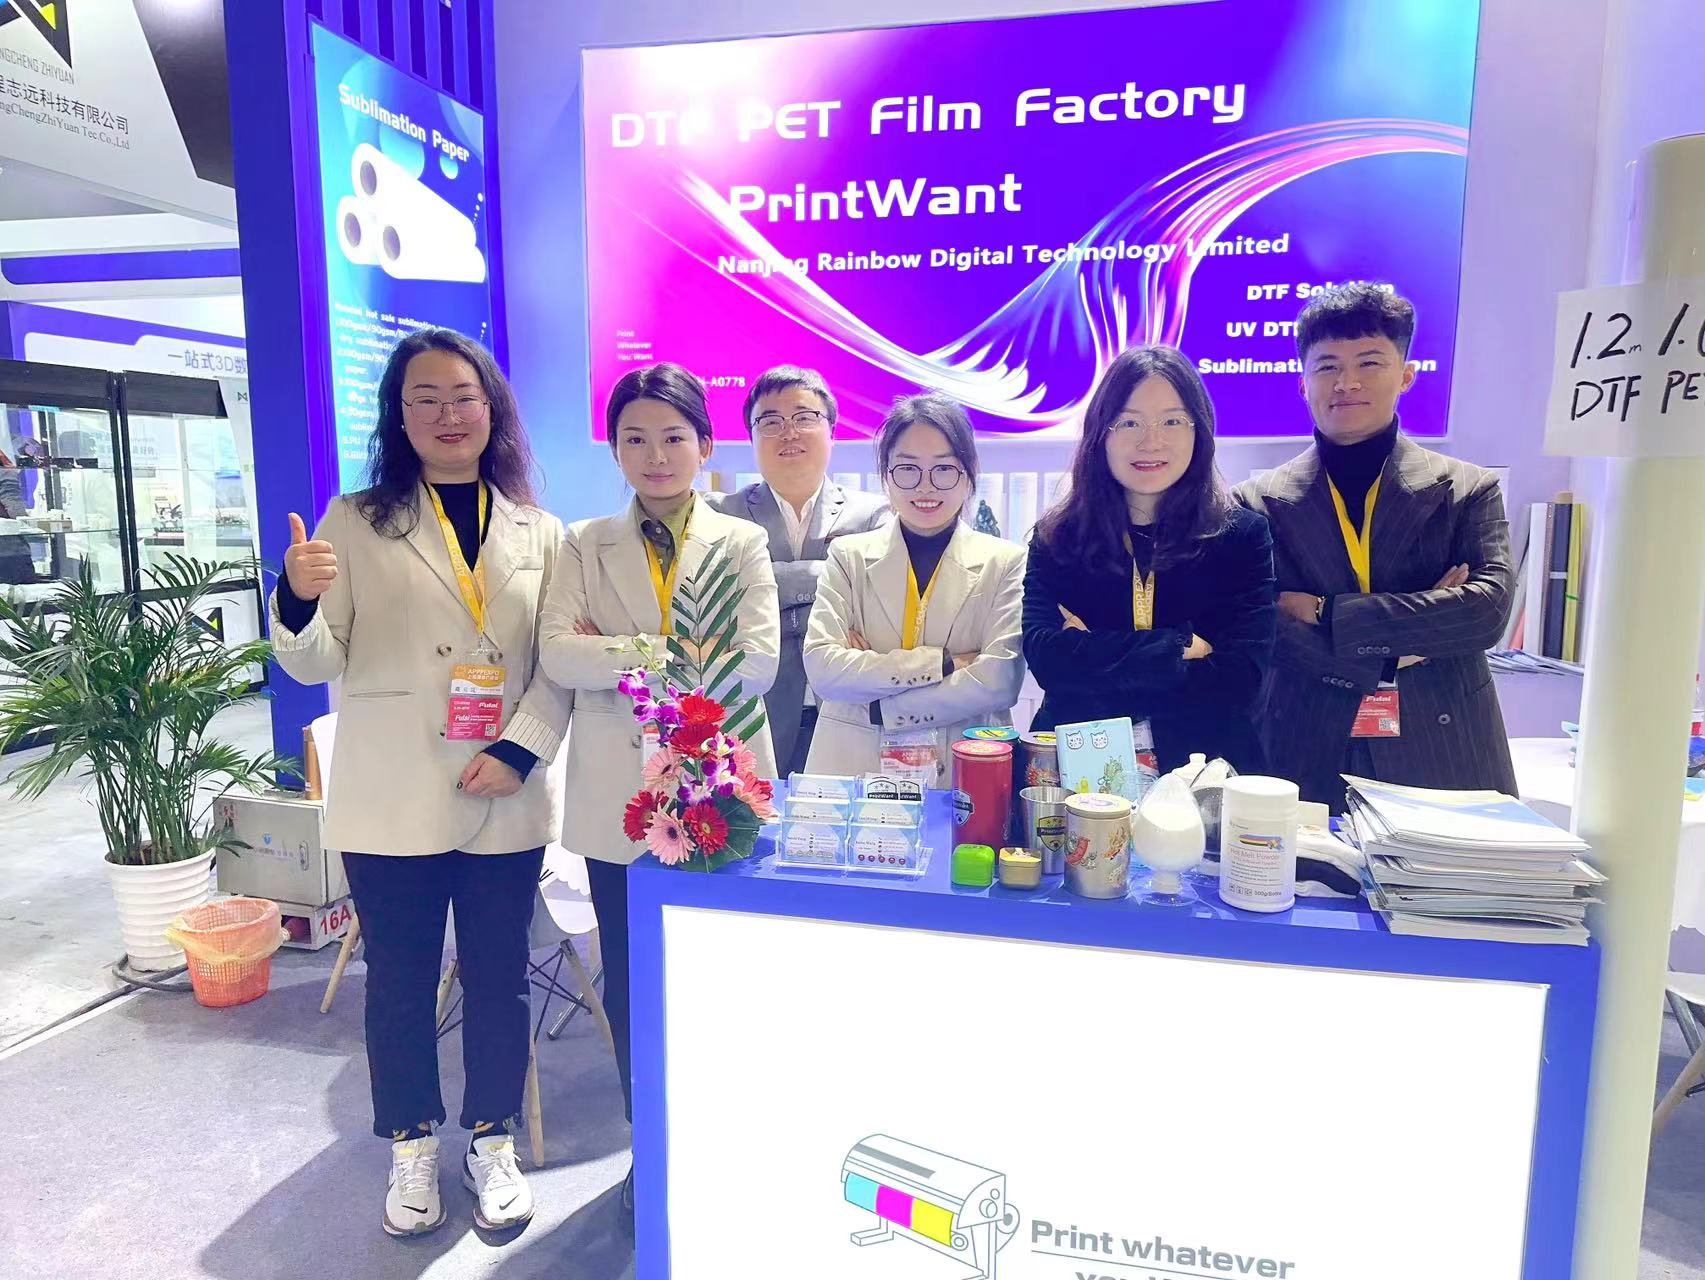 ¡La película DTF de PrintWant brilló en la exposición APPP de Shanghai!